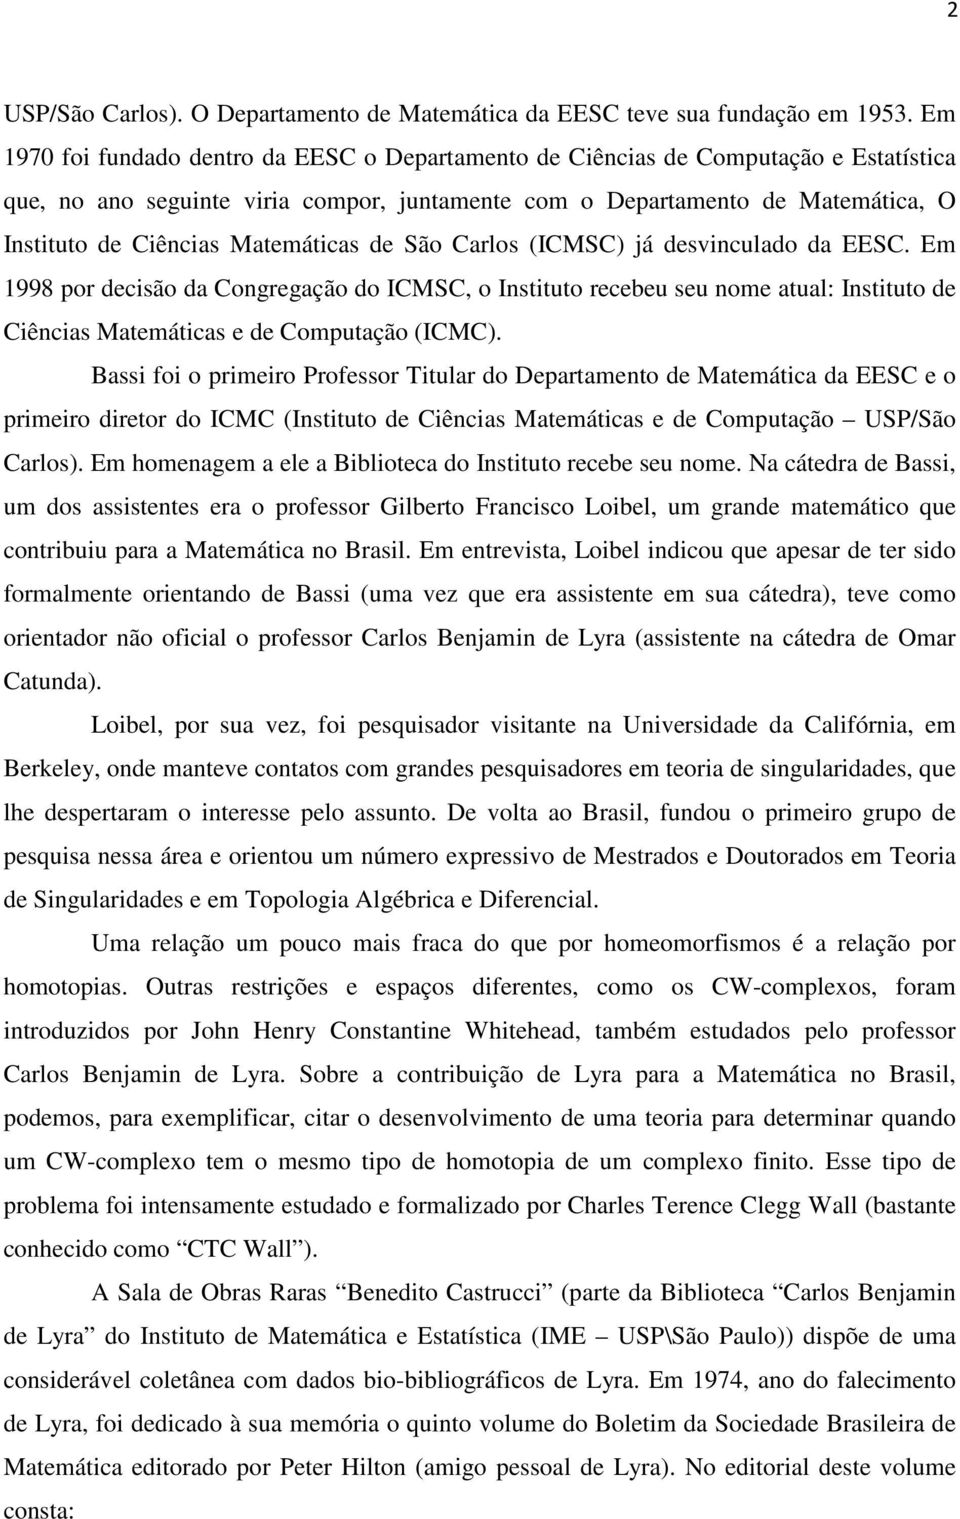 Matemáticas de São Carlos (ICMSC) já desvinculado da EESC. Em 1998 por decisão da Congregação do ICMSC, o Instituto recebeu seu nome atual: Instituto de Ciências Matemáticas e de Computação (ICMC).